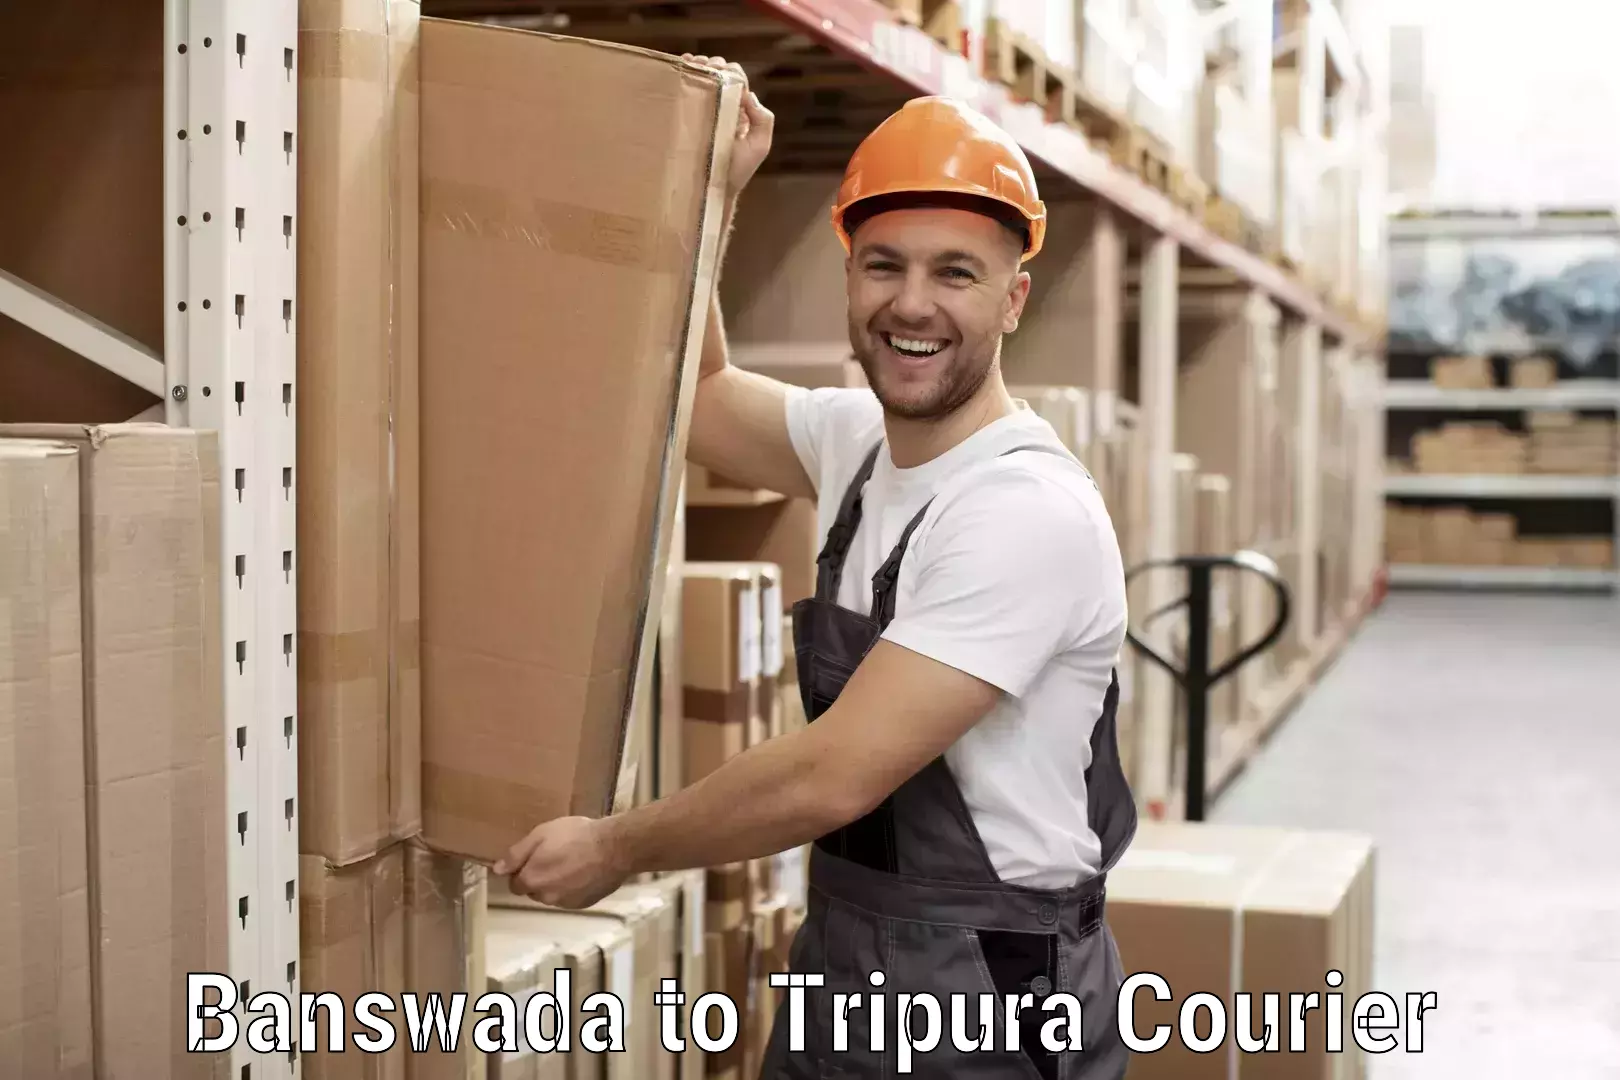 Local delivery service Banswada to North Tripura